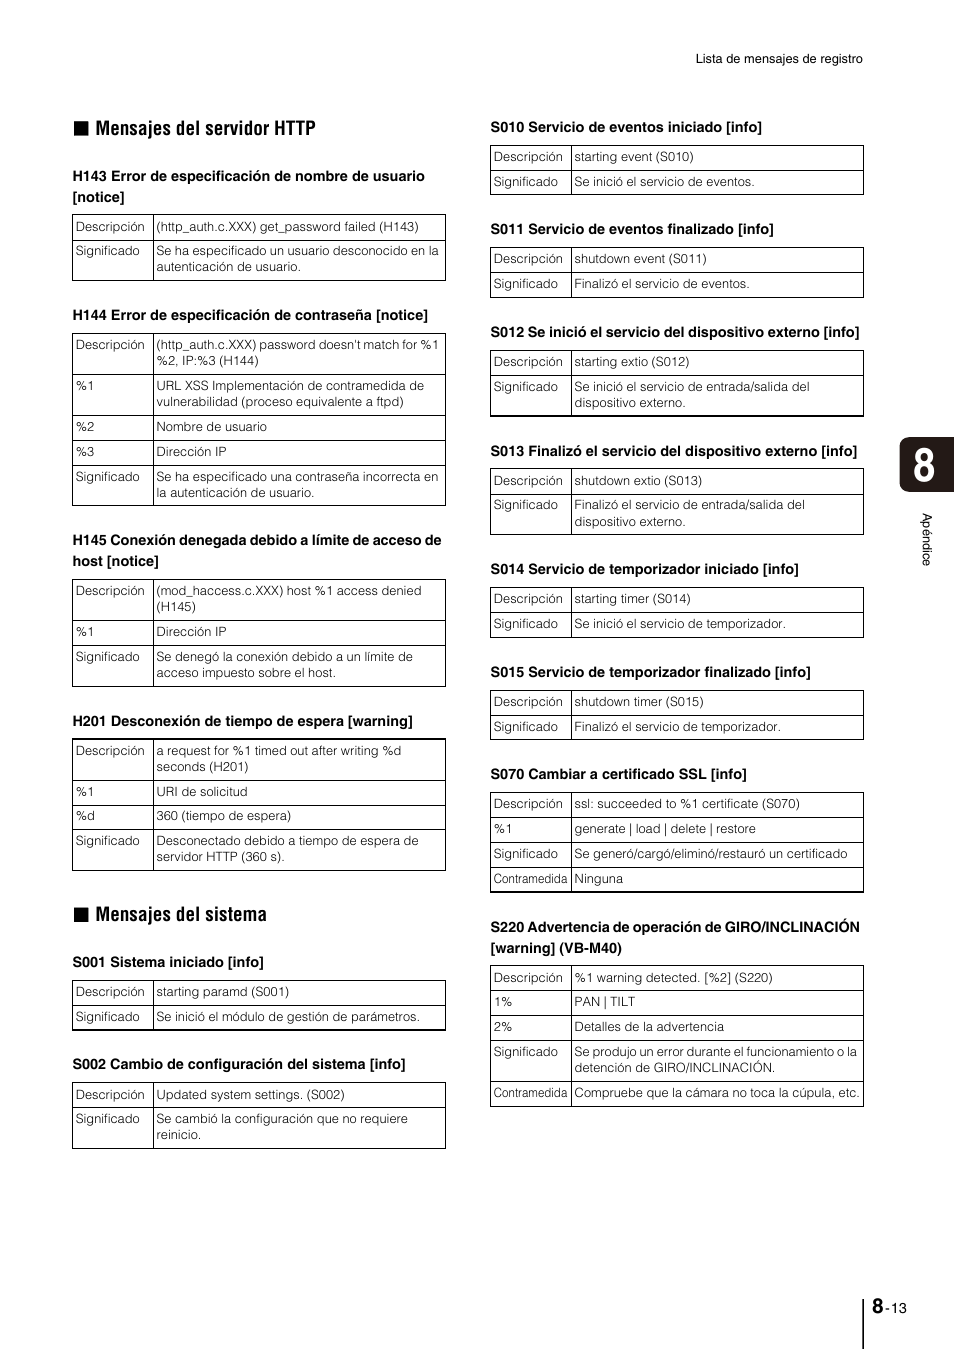 Mensajes del sistema | Canon VB-M700F Manual del usuario | Página 143 / 159